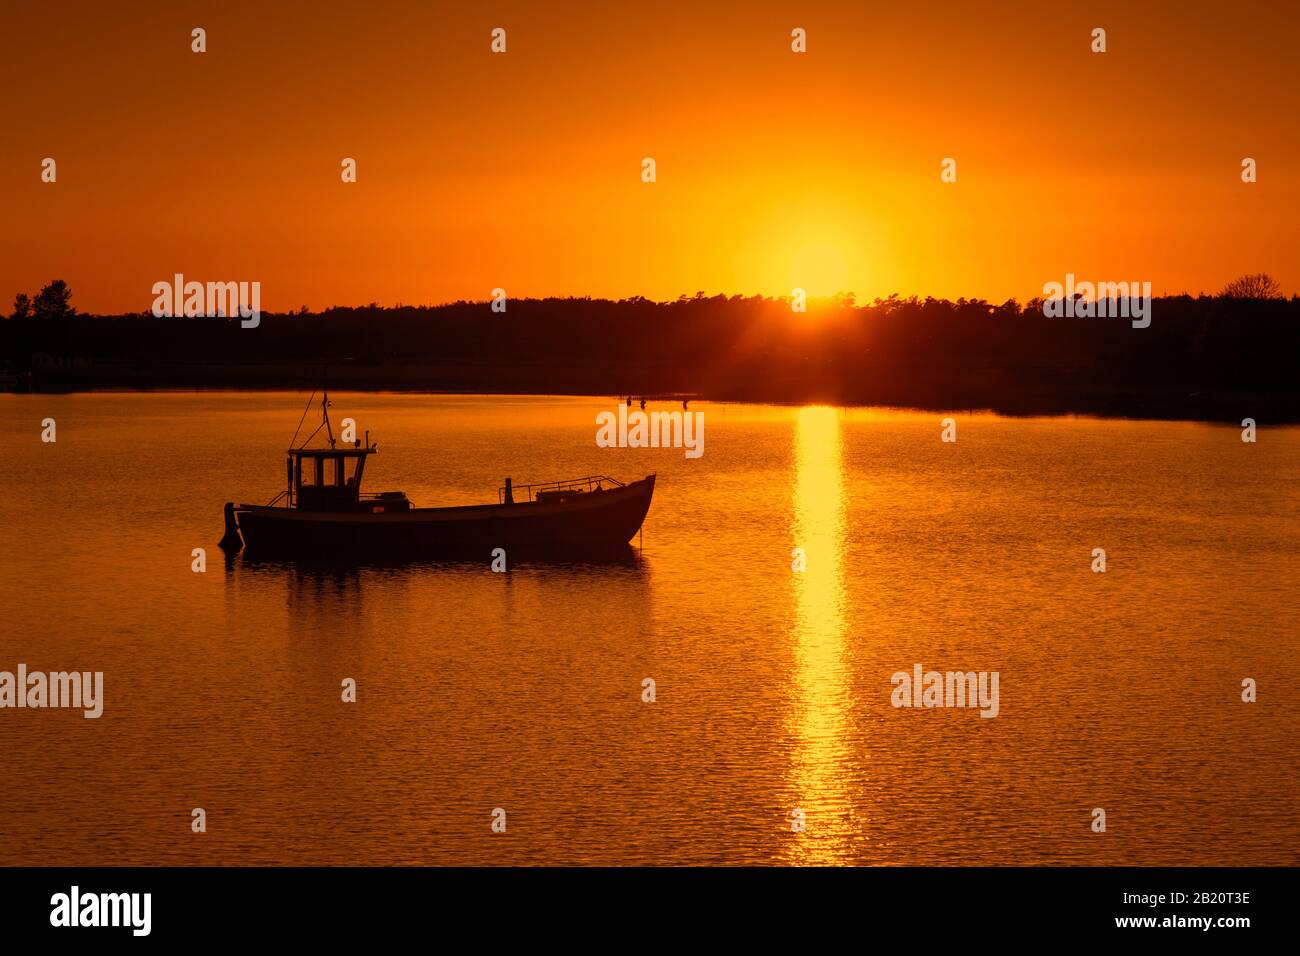 Imbarcazione da pesca silhouette contro il tramonto, isola di Ummanz, comune nel distretto di Vorpommern-Rügen nel Mecklenburg-Vorpommern, Germania Foto Stock